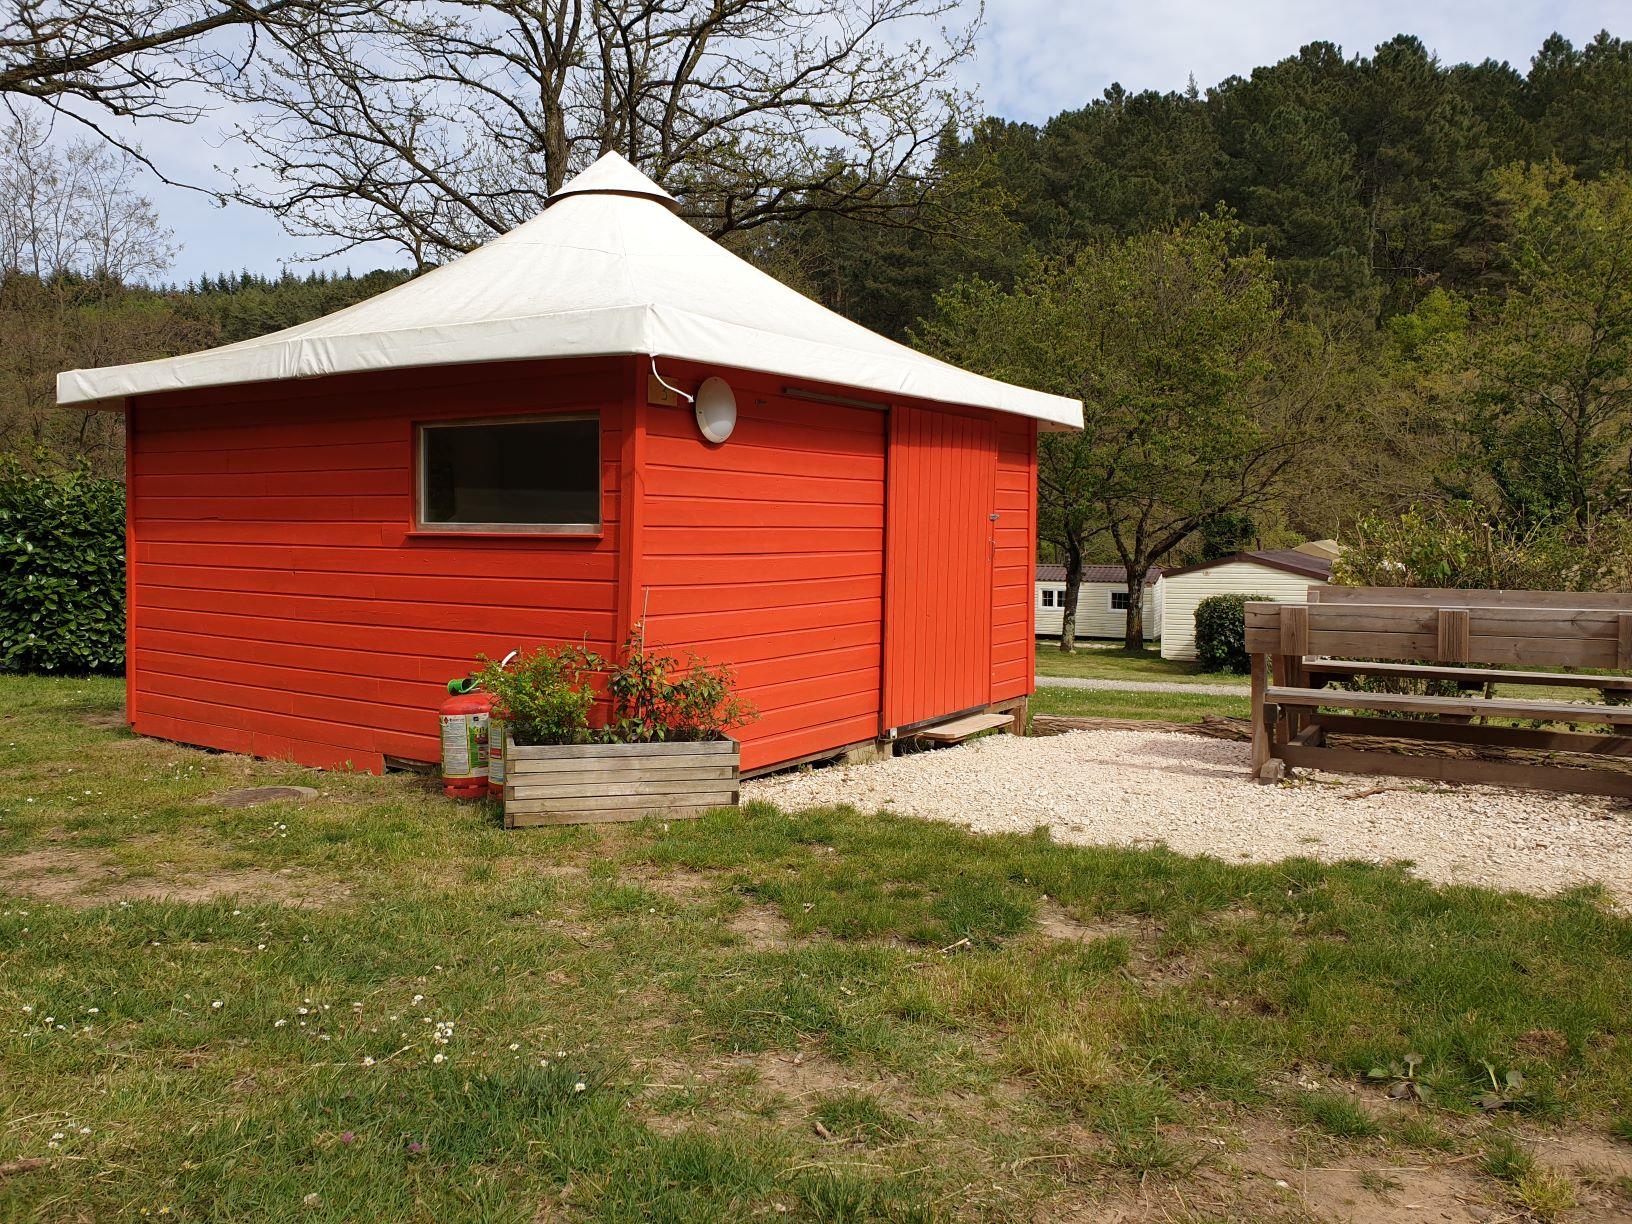 Huuraccommodatie - De Hut 16M² (2 Slaapkamers) Zonder Wc - Camping Coeur d'Ardèche